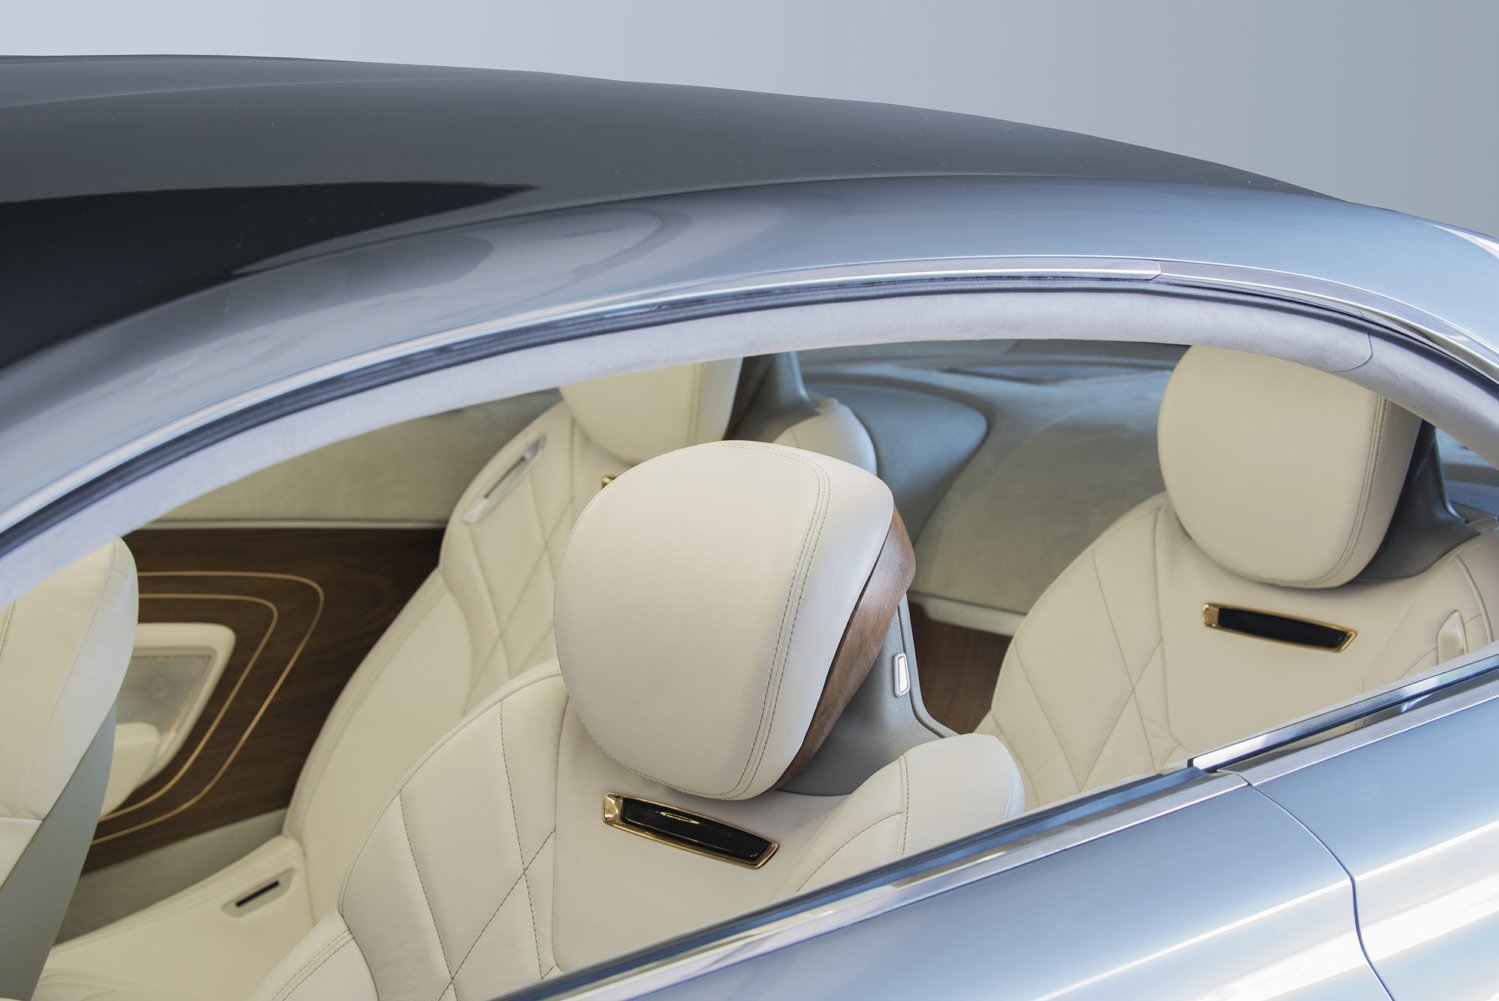 Interier Hyundai Vision G opravdu dýchá luxusem.